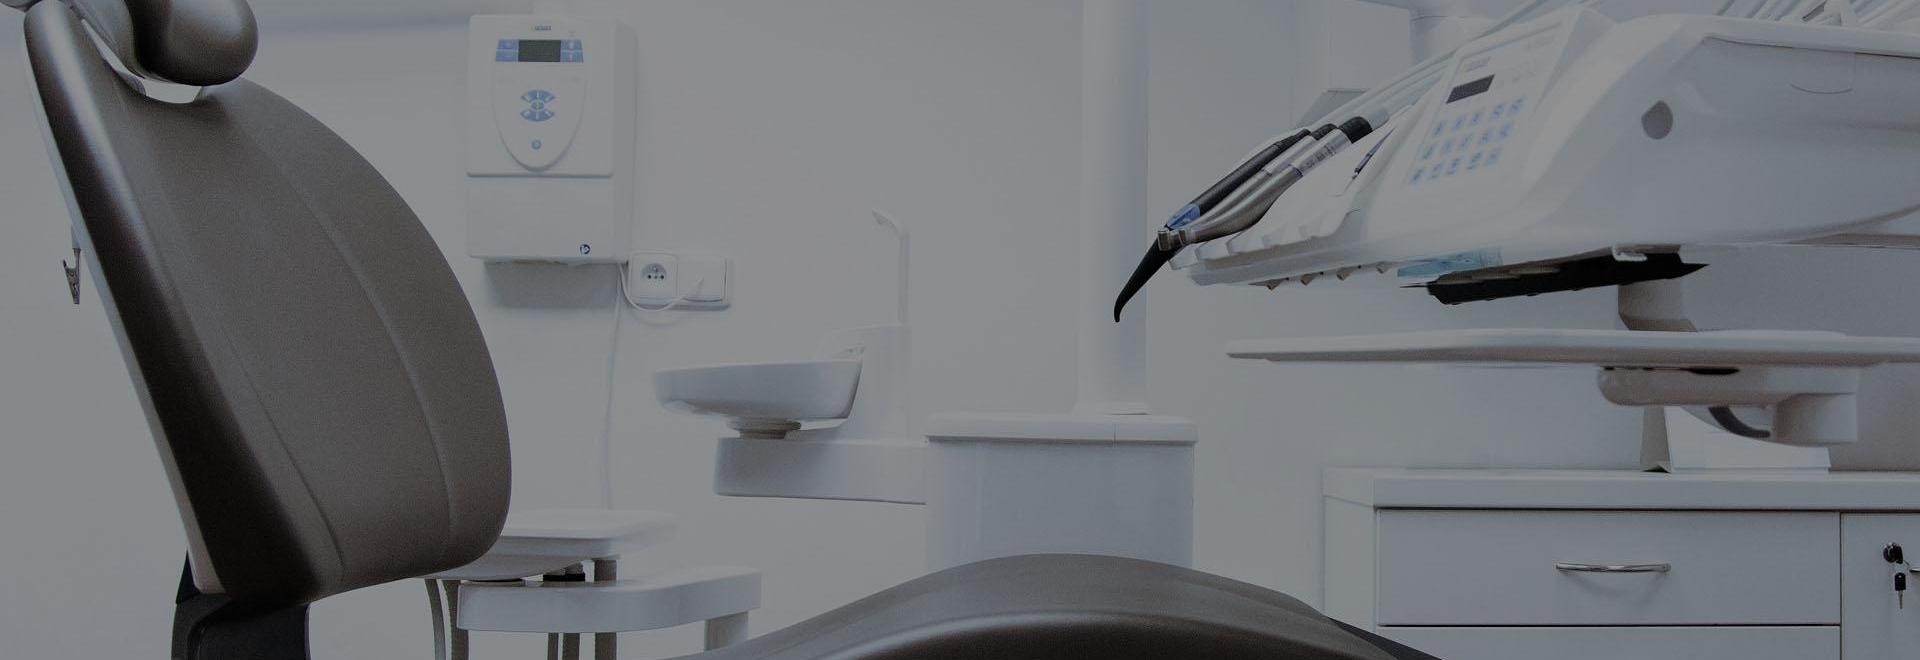 Website voor tandartsen